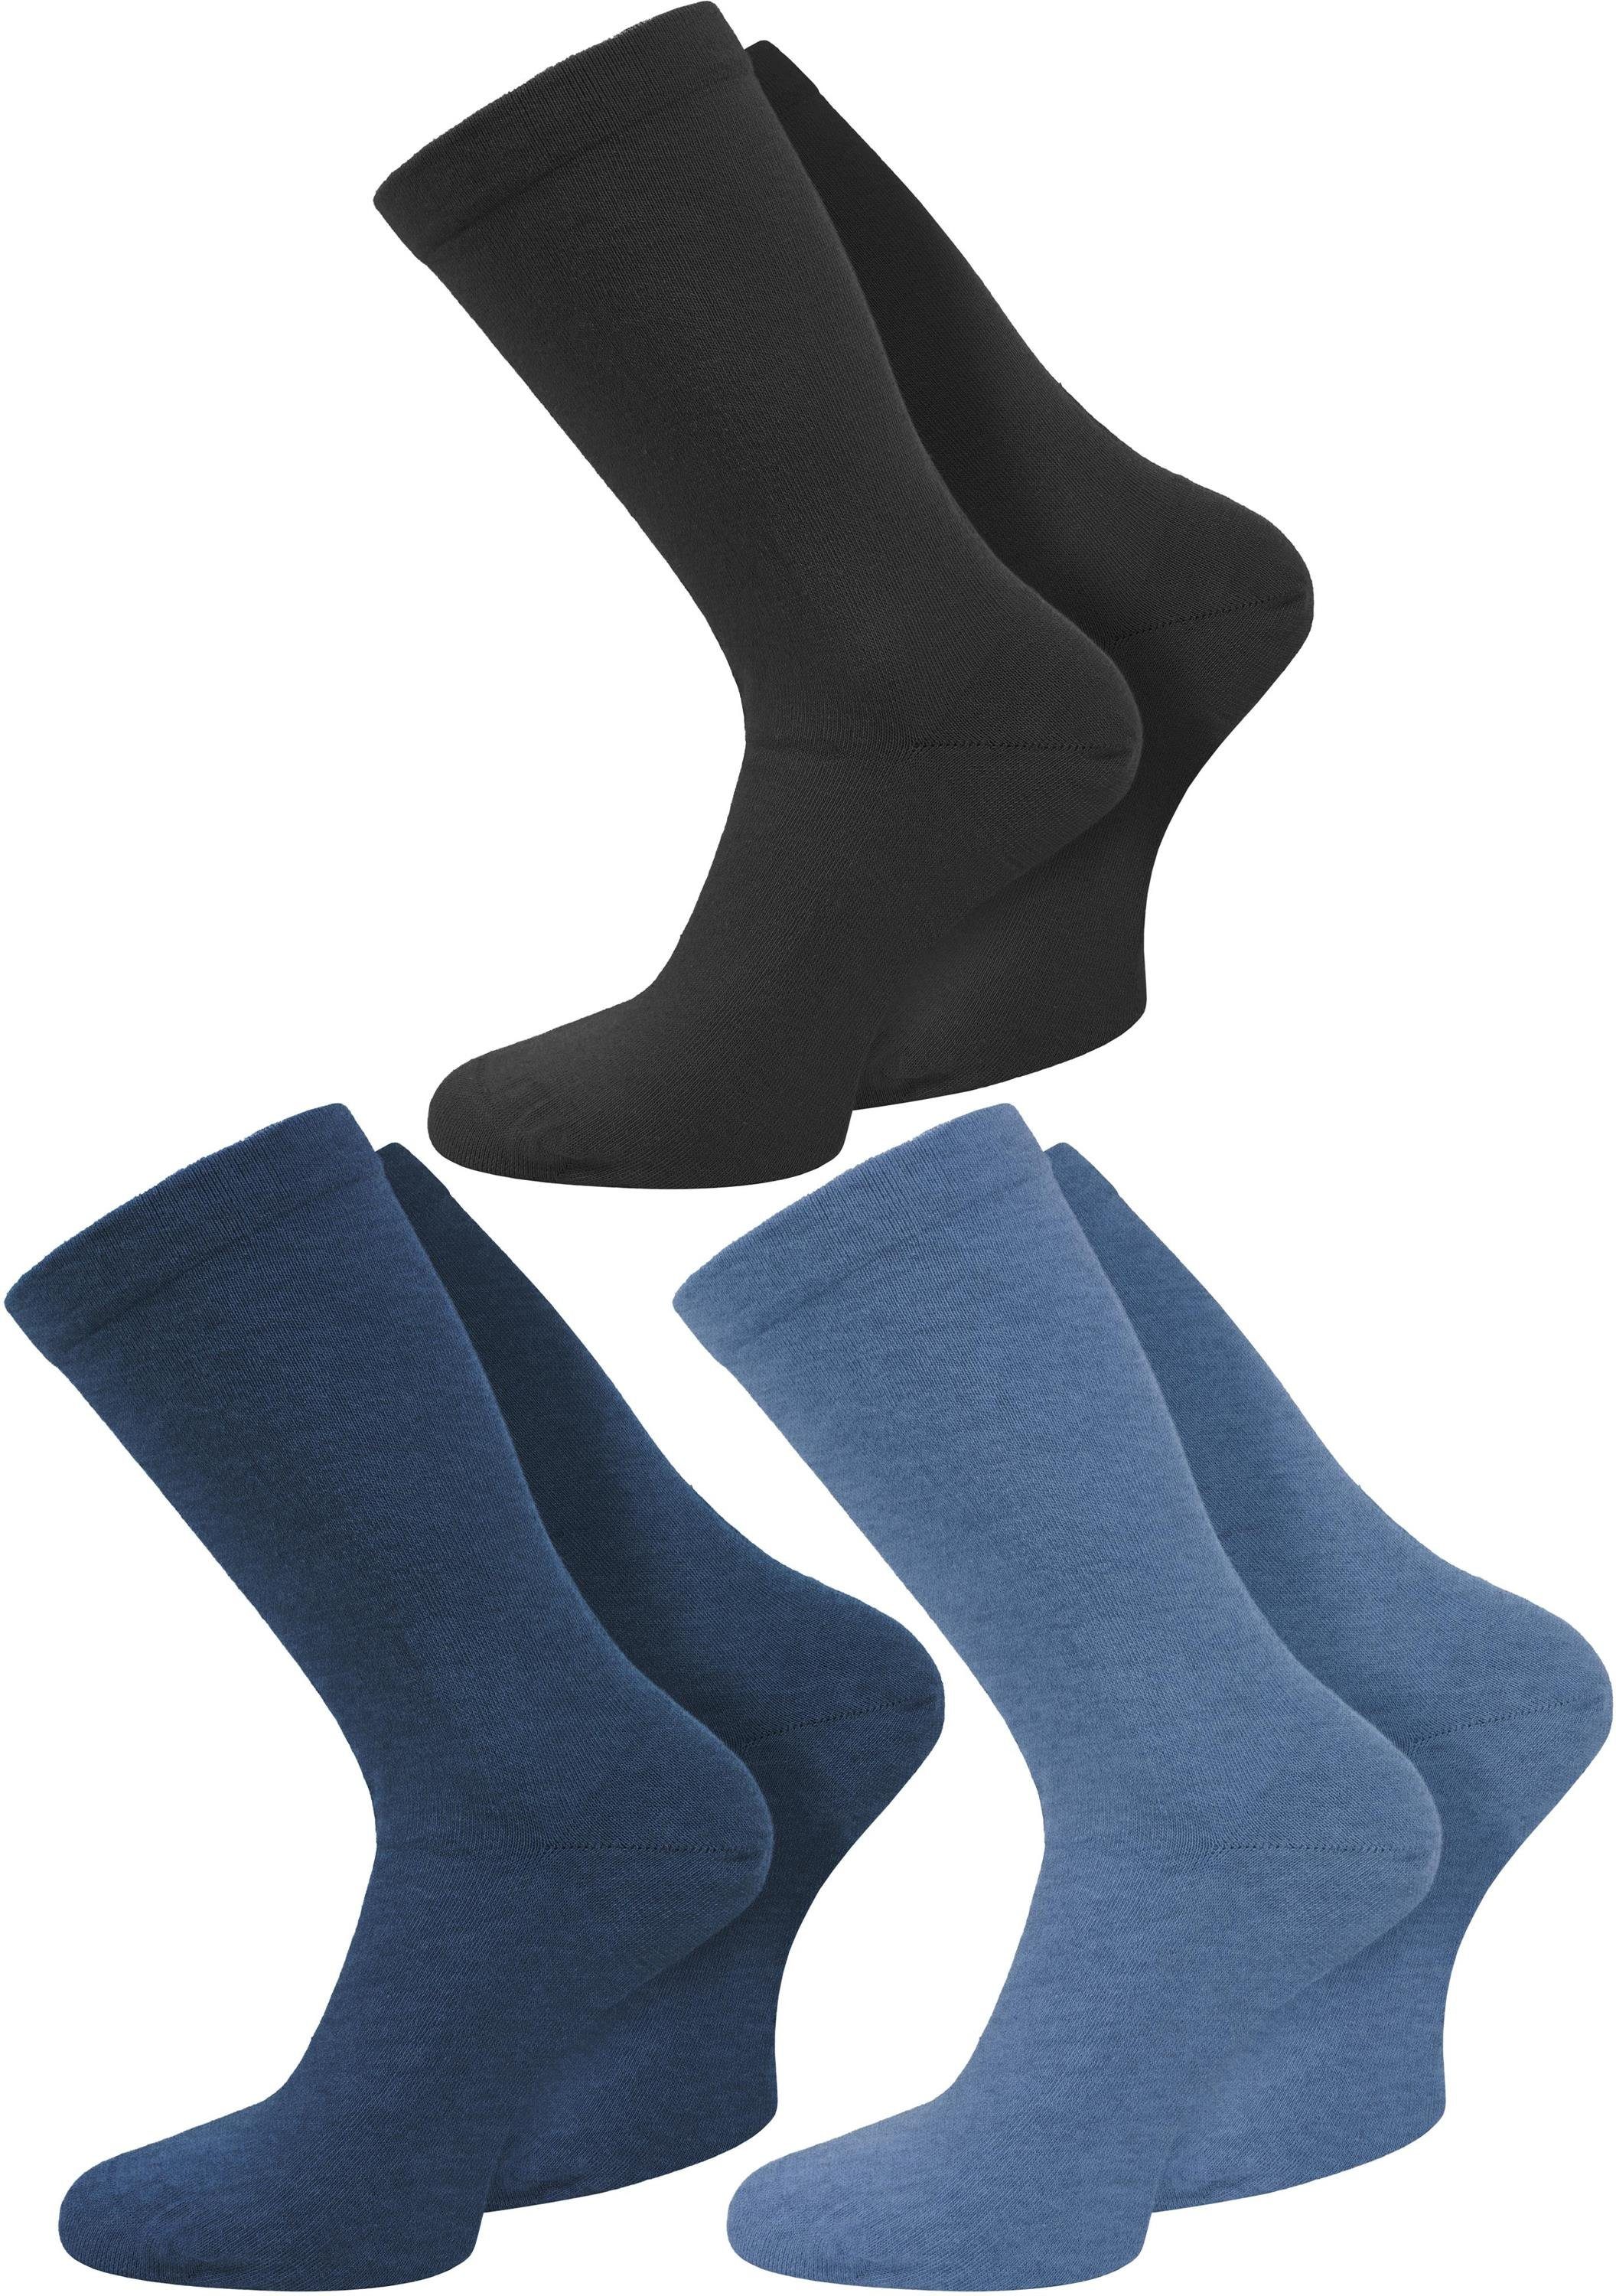 Paar mit Paar) Bündchen einschneidendes normani Jeansblau/Mittelblau/Schwarz 3 ohne (3 Komfortbund Diabetikersocken Gesundheitssocken